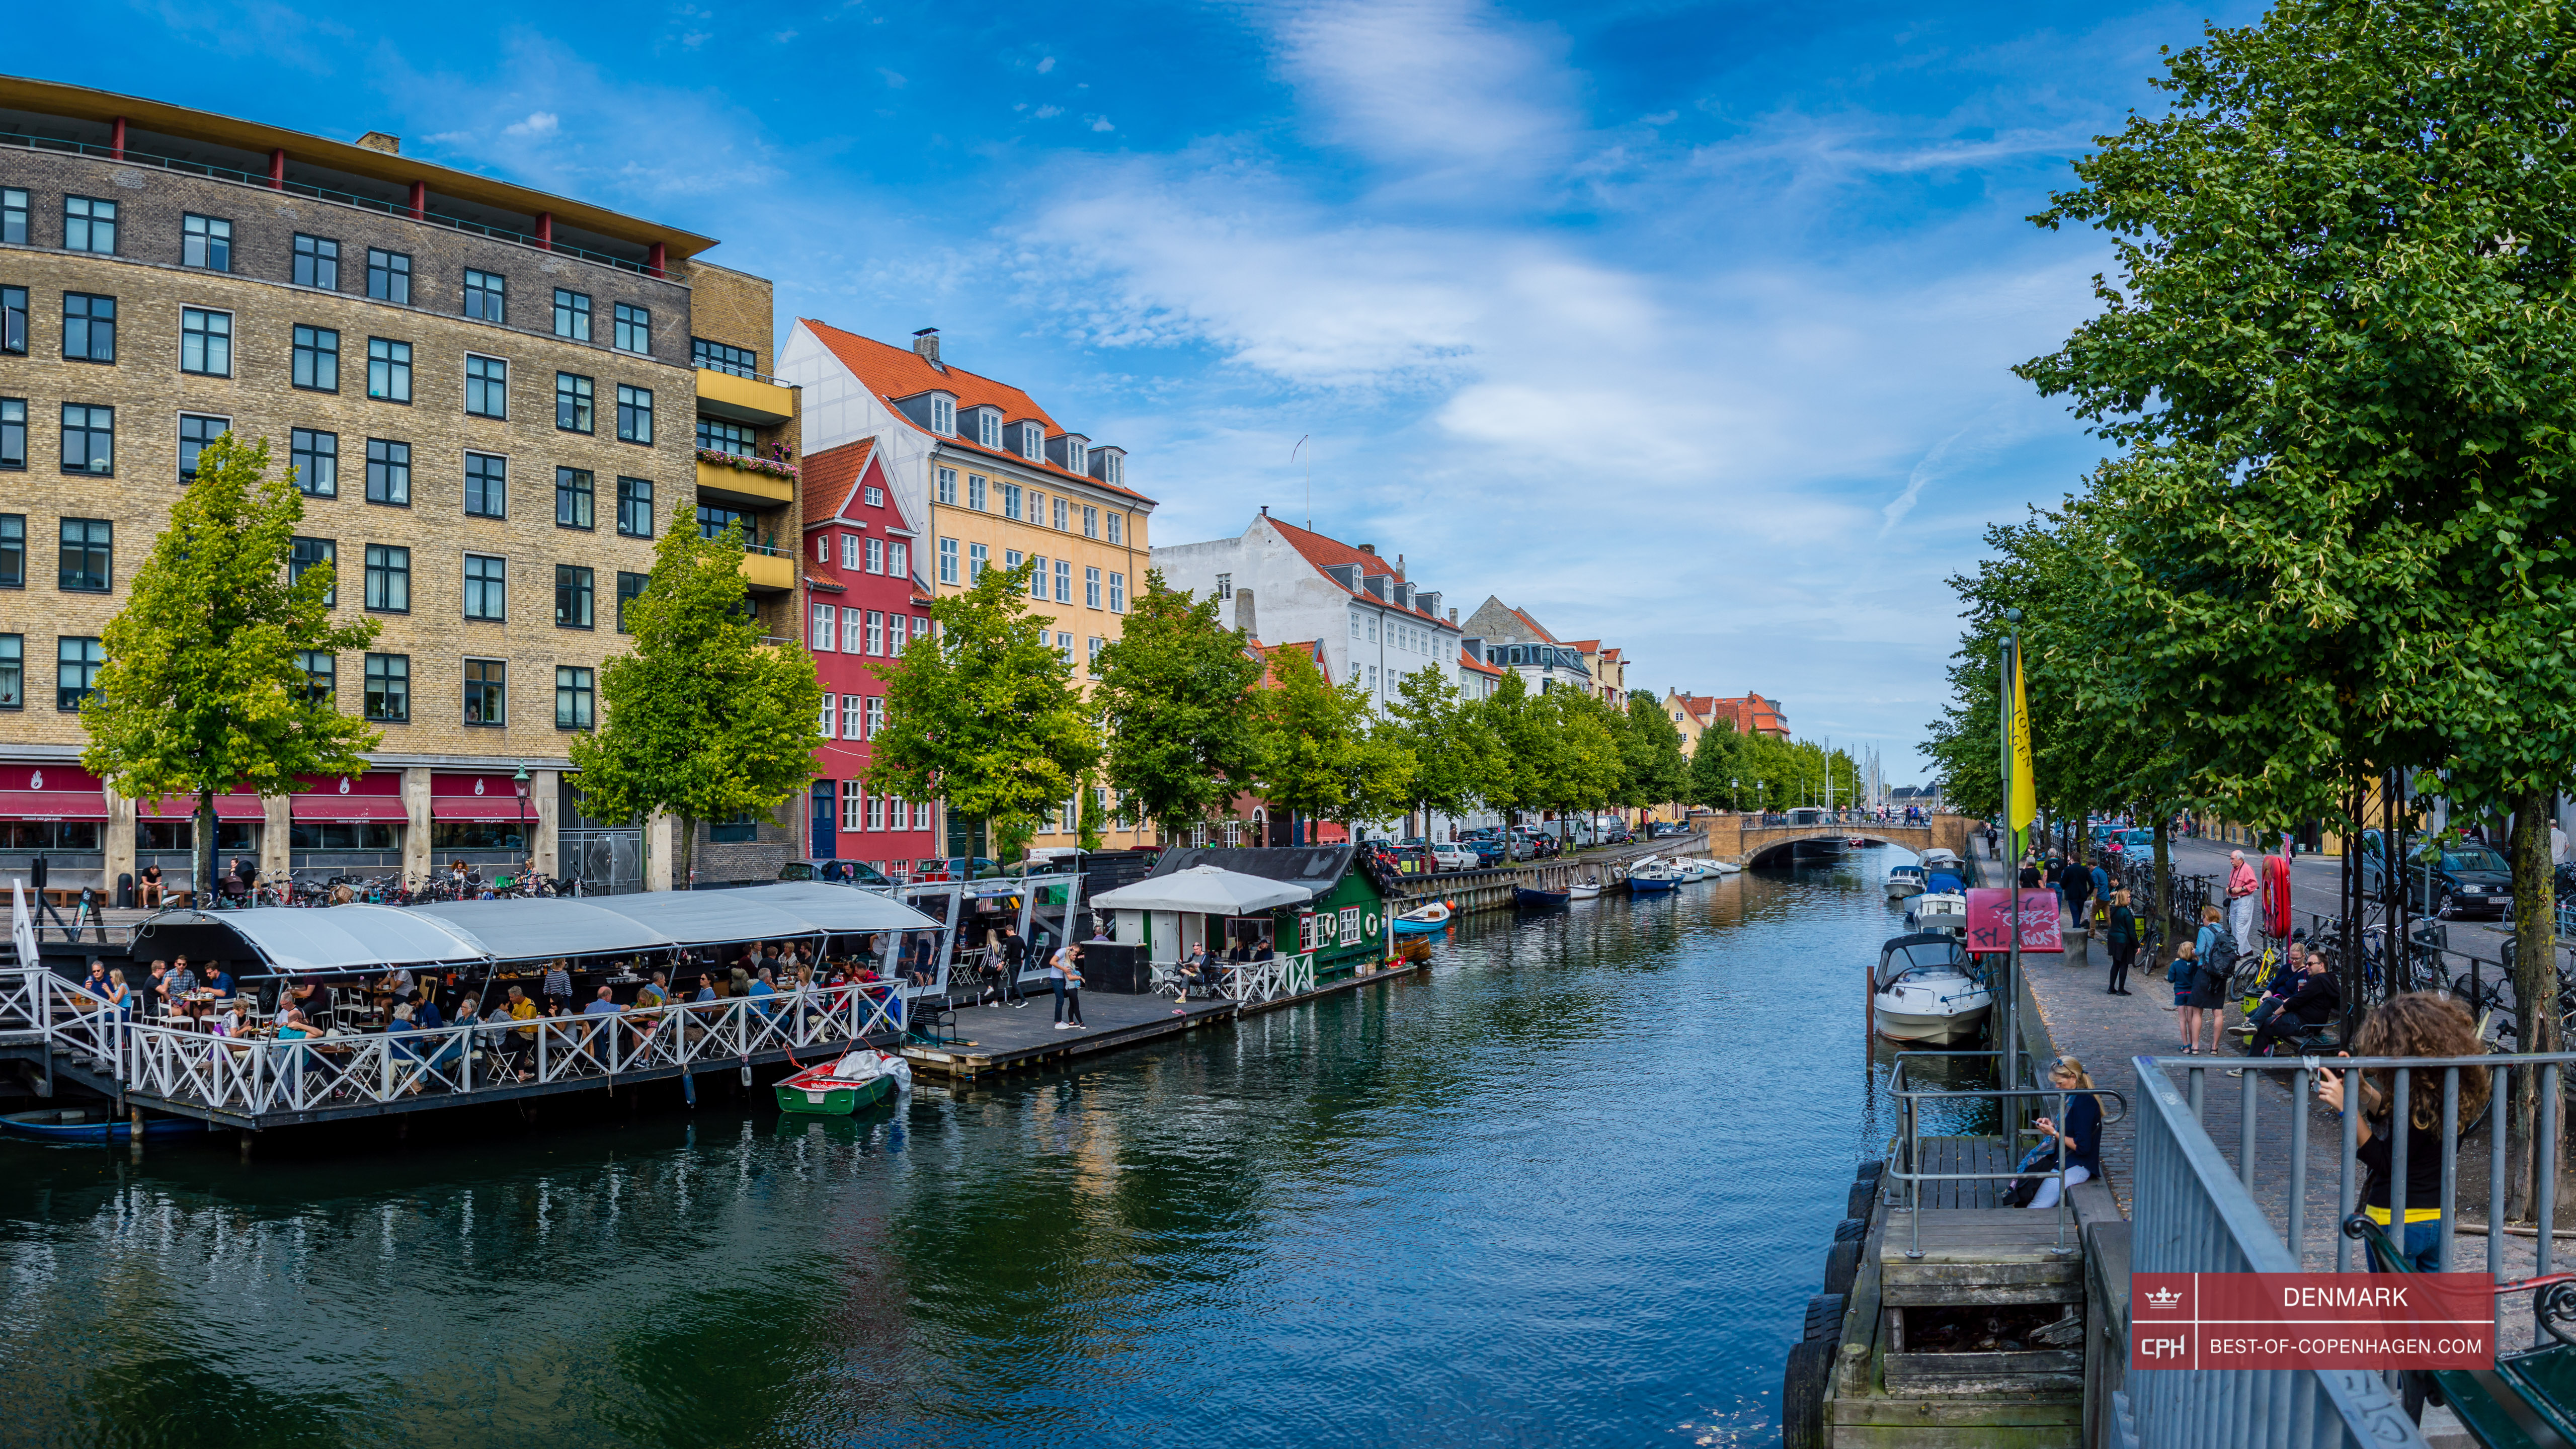 Каналы в Кристианхавне, Копенгаген, Дания